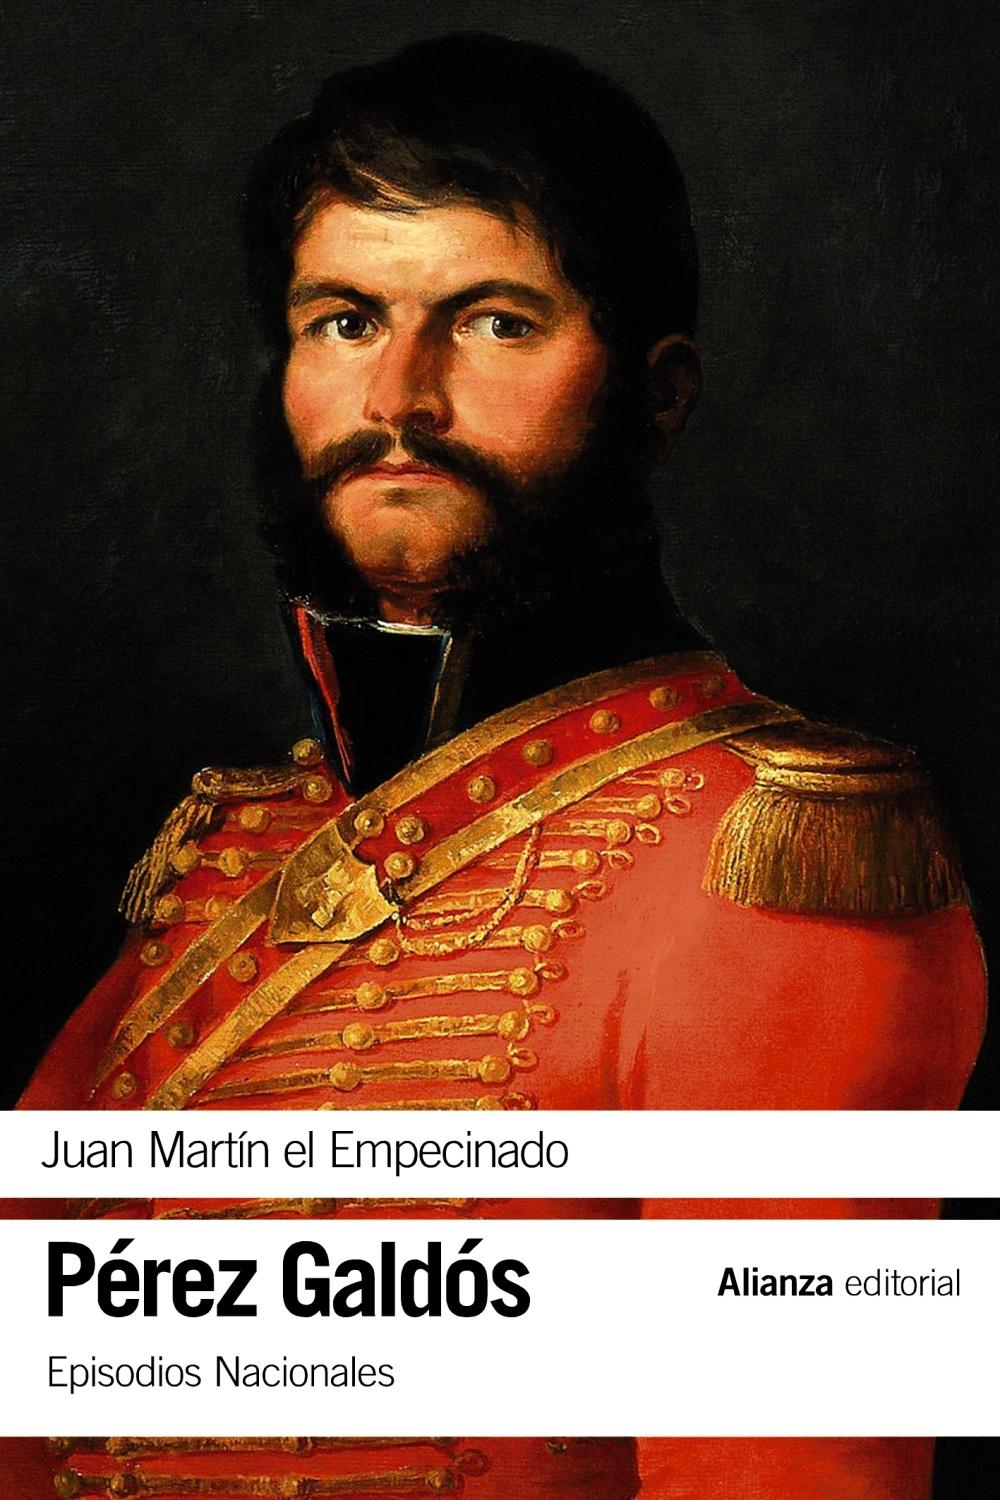 Juan Martín el Empecinado "Episodios Nacionales, 9 / Primera serie". 